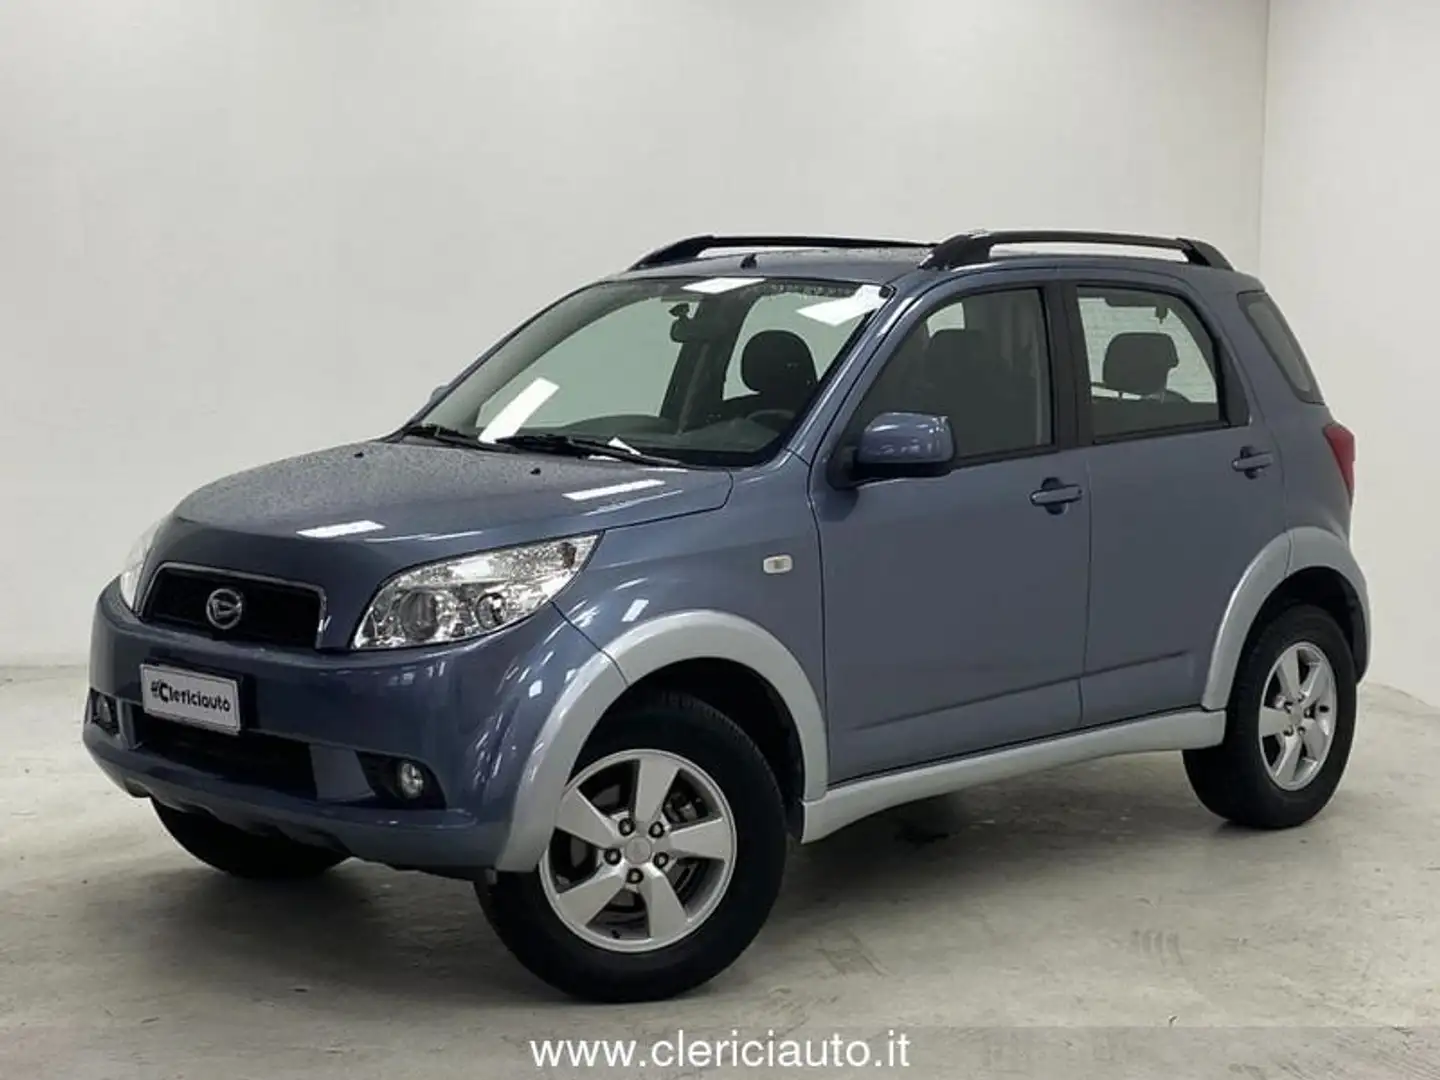 usato Daihatsu Terios SUV/Fuoristrada/Pick-up a Lurate Caccivio - Como - Co  per € 8.800,-